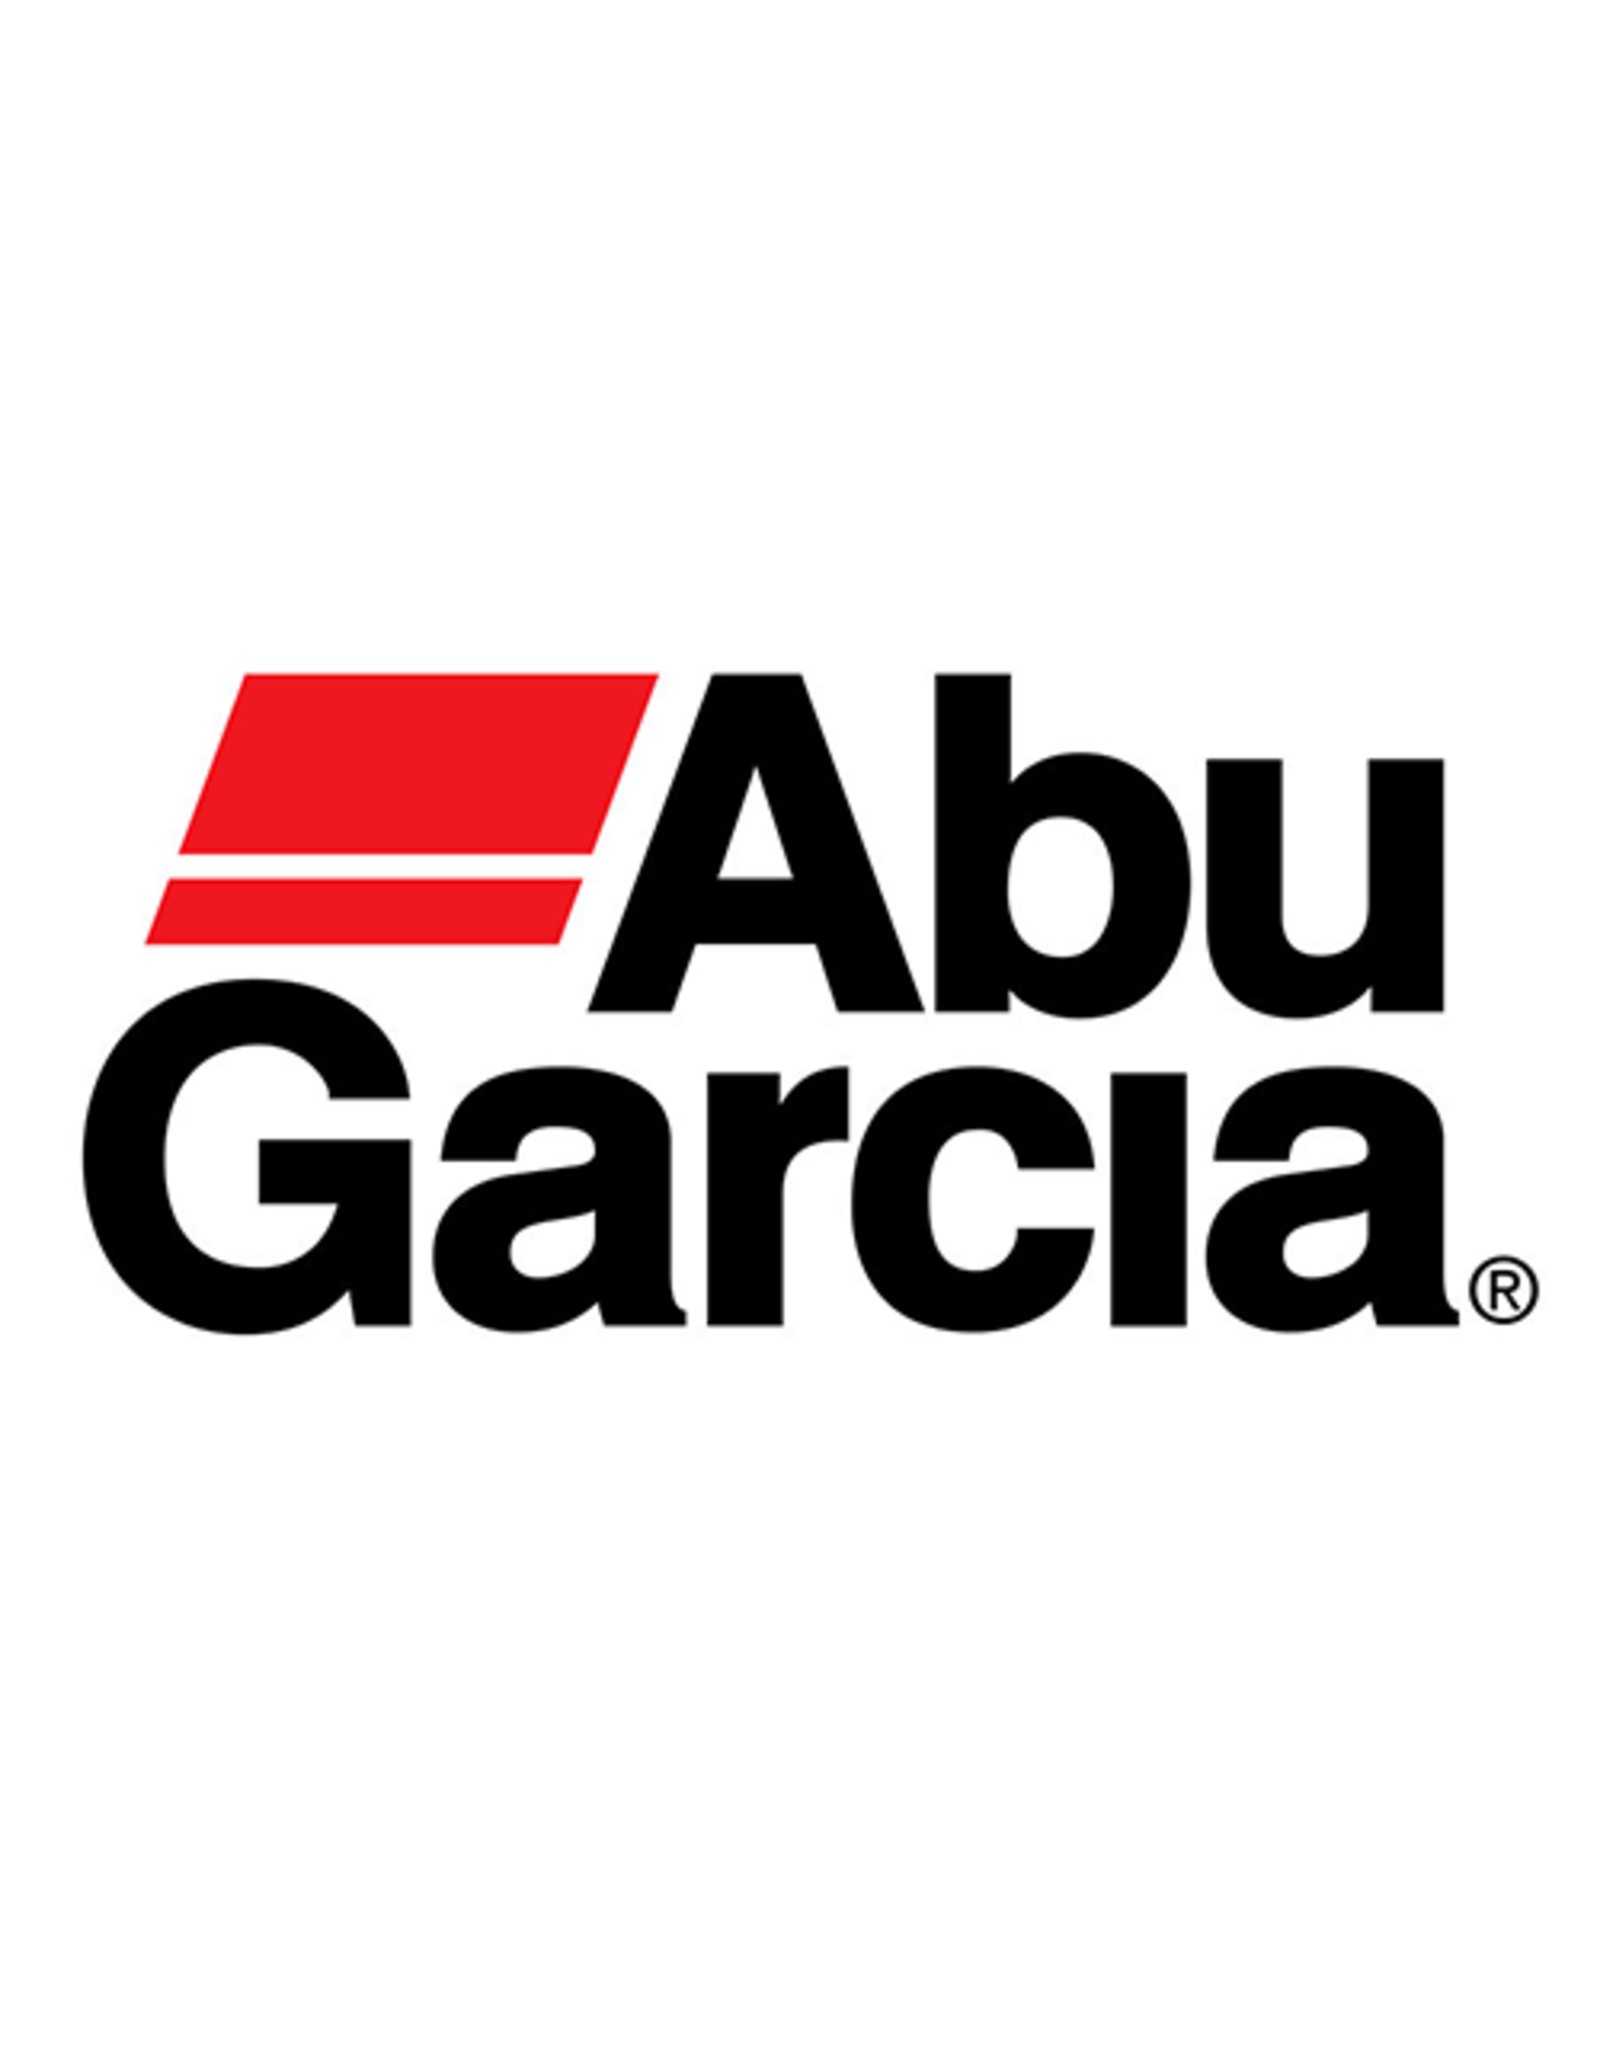 Abu Garcia 1281139  CAM LOCK SCREW